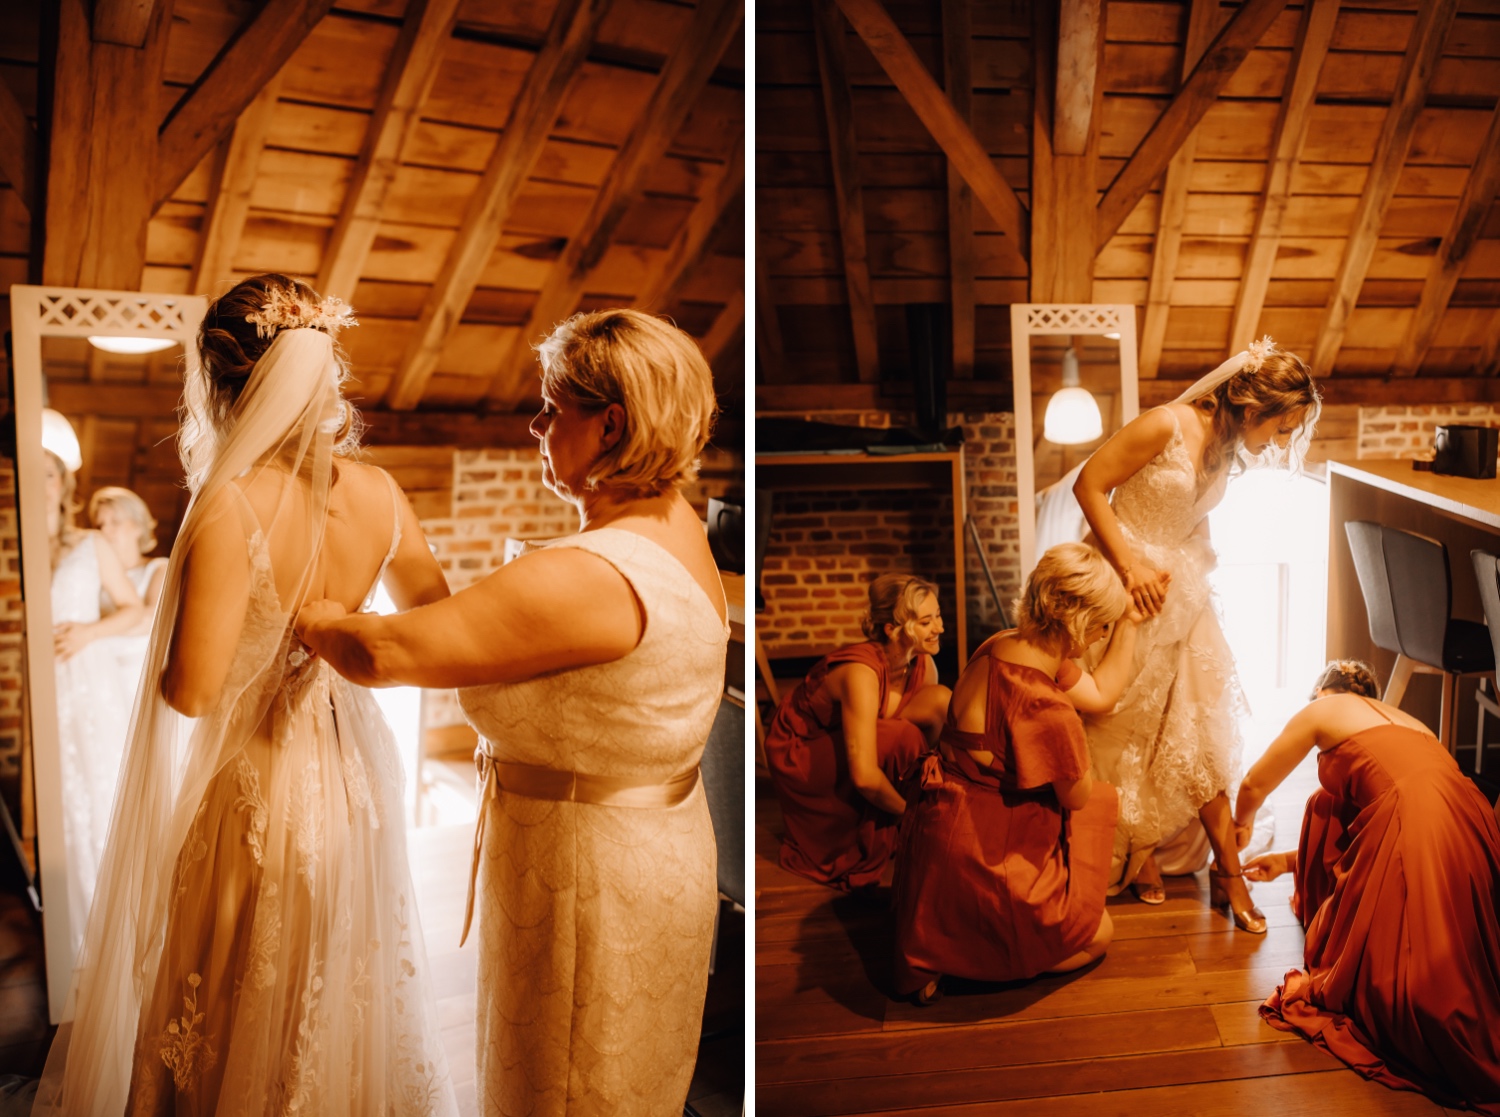 Huwelijksfotograaf Limburg - bruidsmeisjes helpen de bruid met aankleden